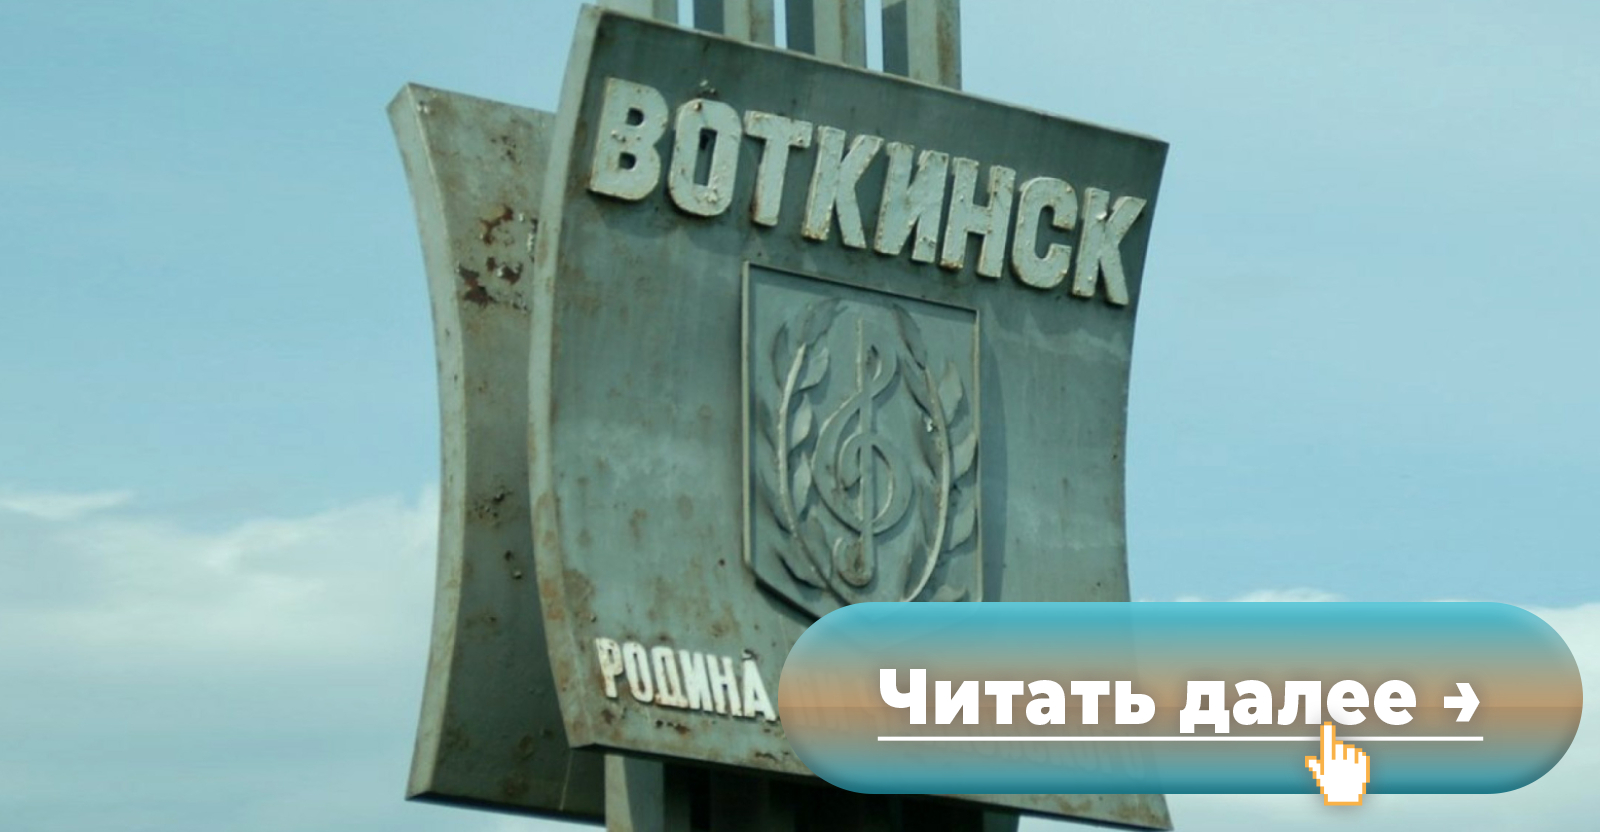 ☰ Секс знакомства Воткинск. Реальные онлайн знакомства